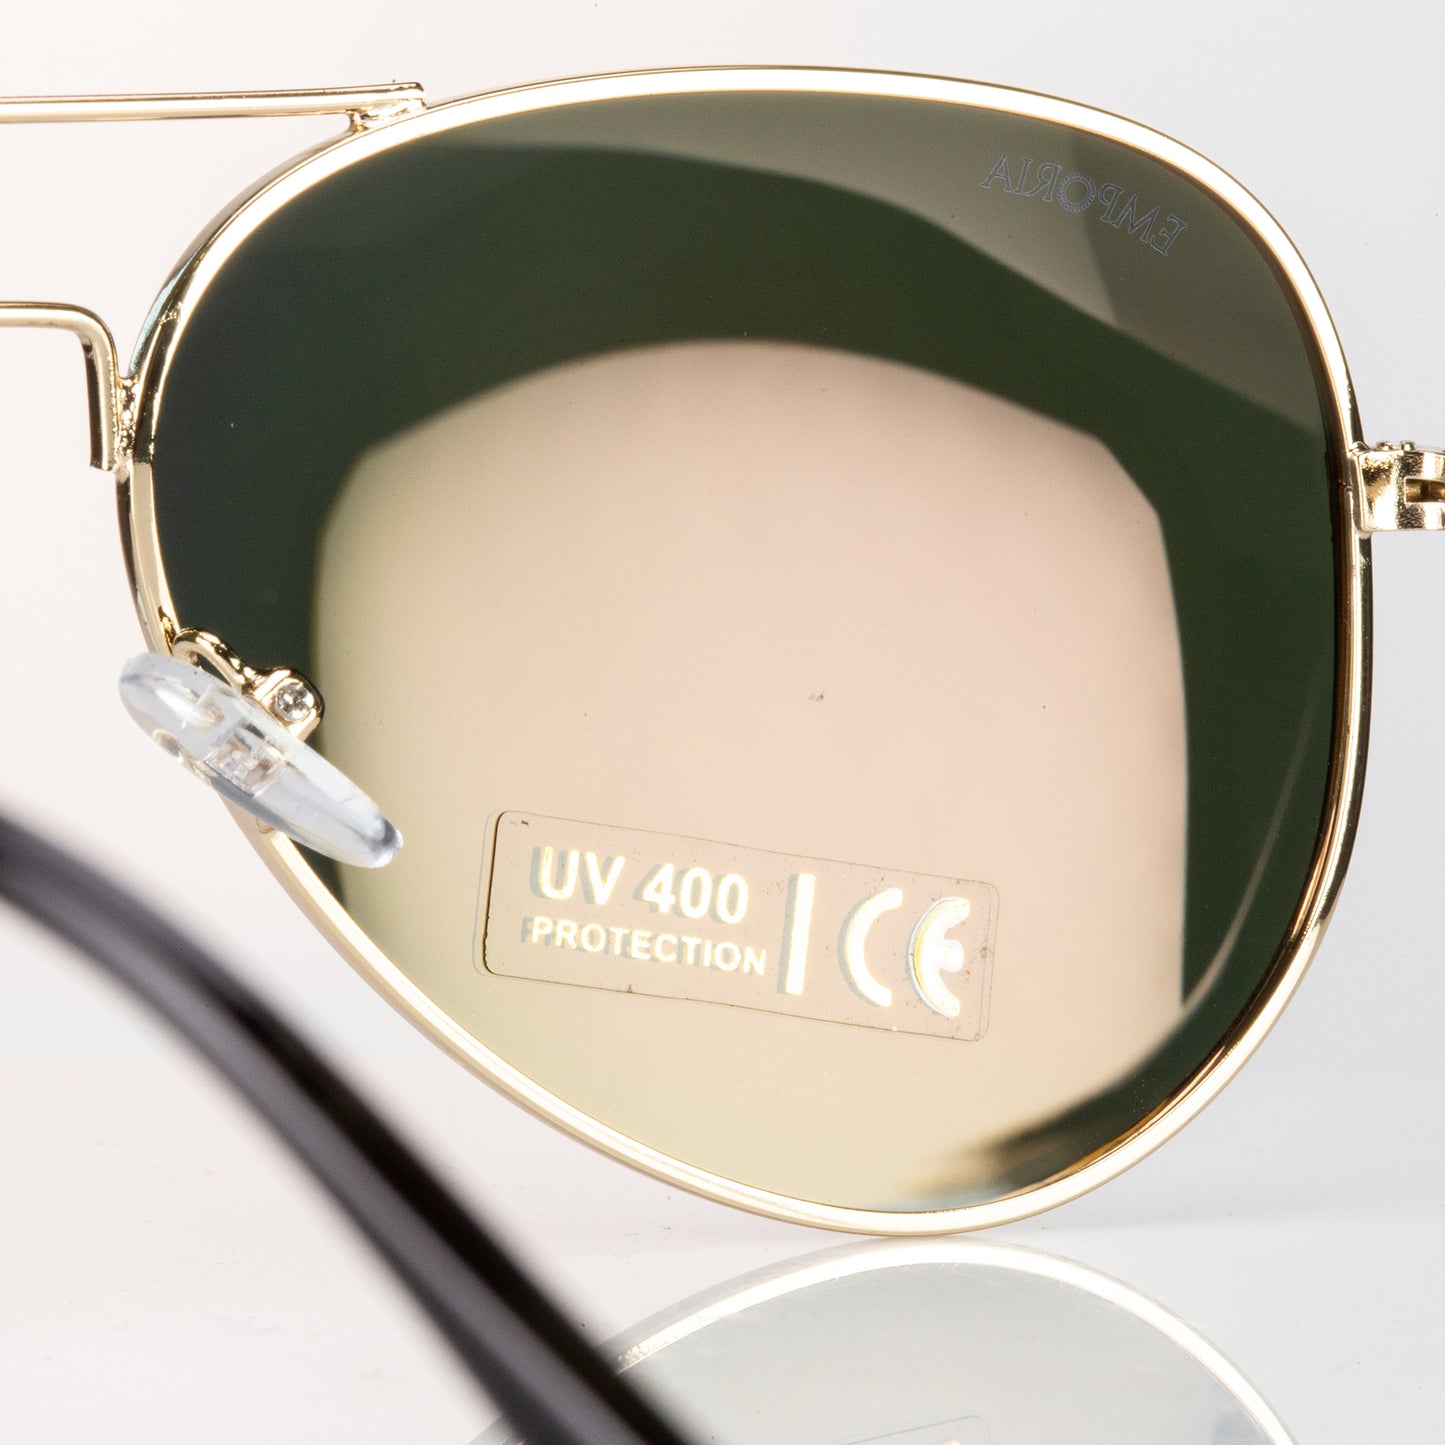 Emporia Włochy - Okulary przeciwsłoneczne Aviator "SUNBURST", spolaryzowane okulary przeciwsłoneczne z twardym etui i ściereczką do czyszczenia, pomarańczowe szkła sunburst, złota oprawka